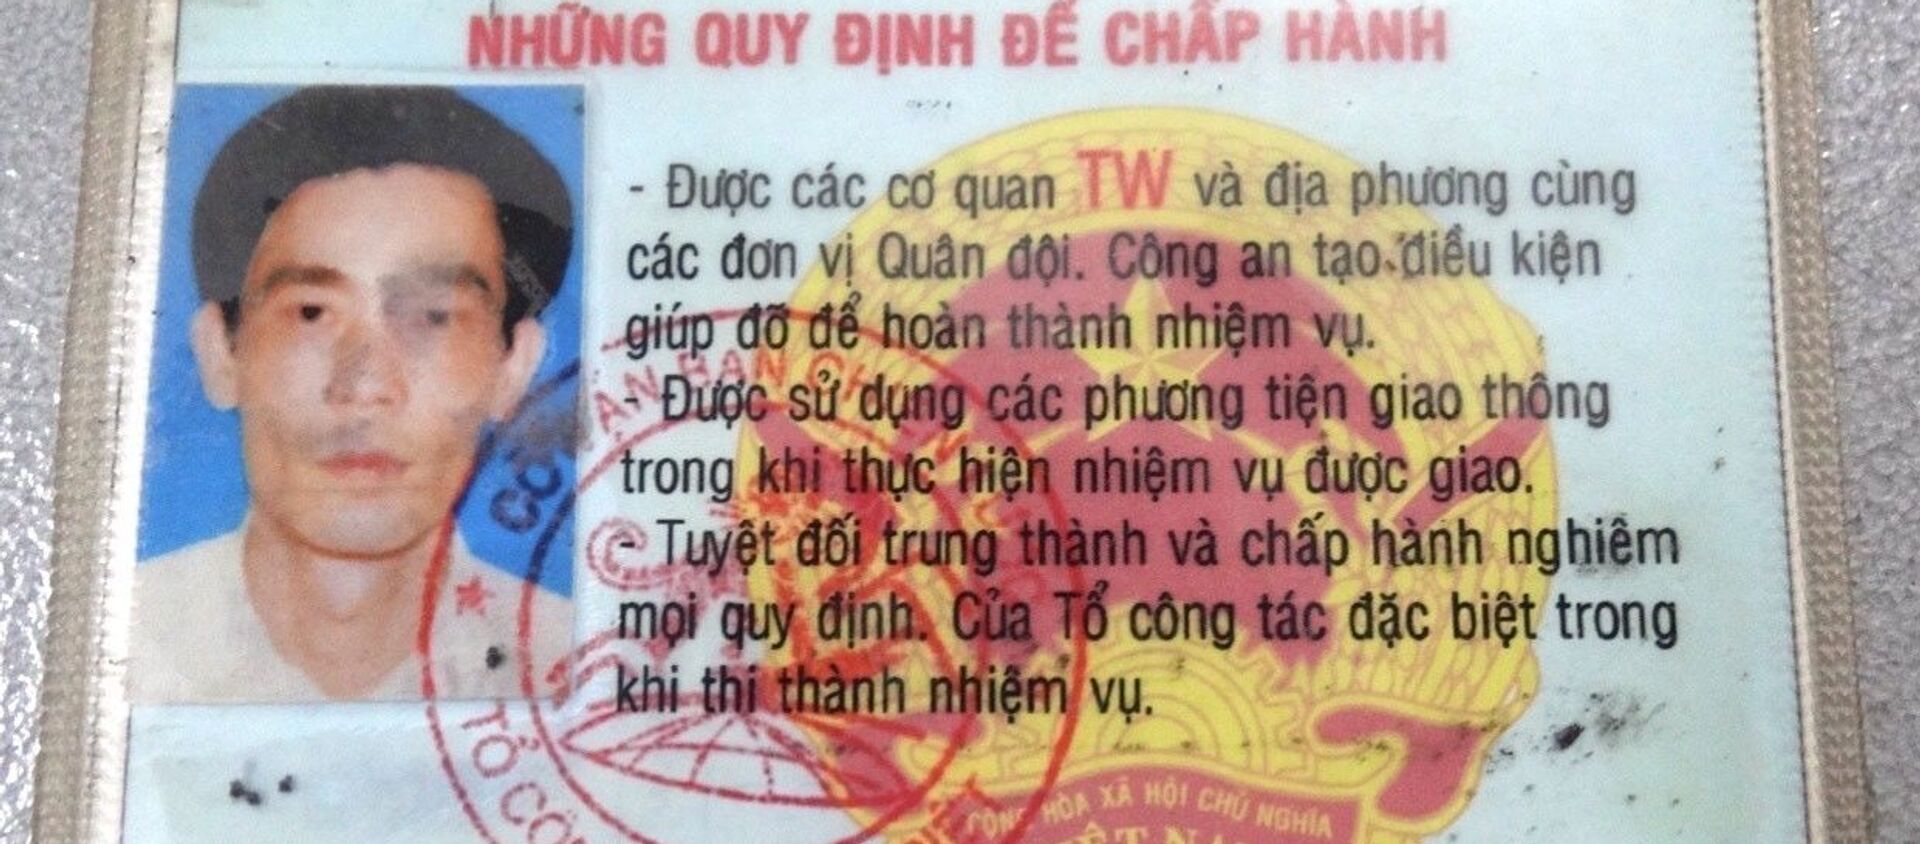 Đồng Nai: Bắt đối tượng sử dụng “Thẻ công vụ đặc biệt giả” - Sputnik Việt Nam, 1920, 24.05.2021